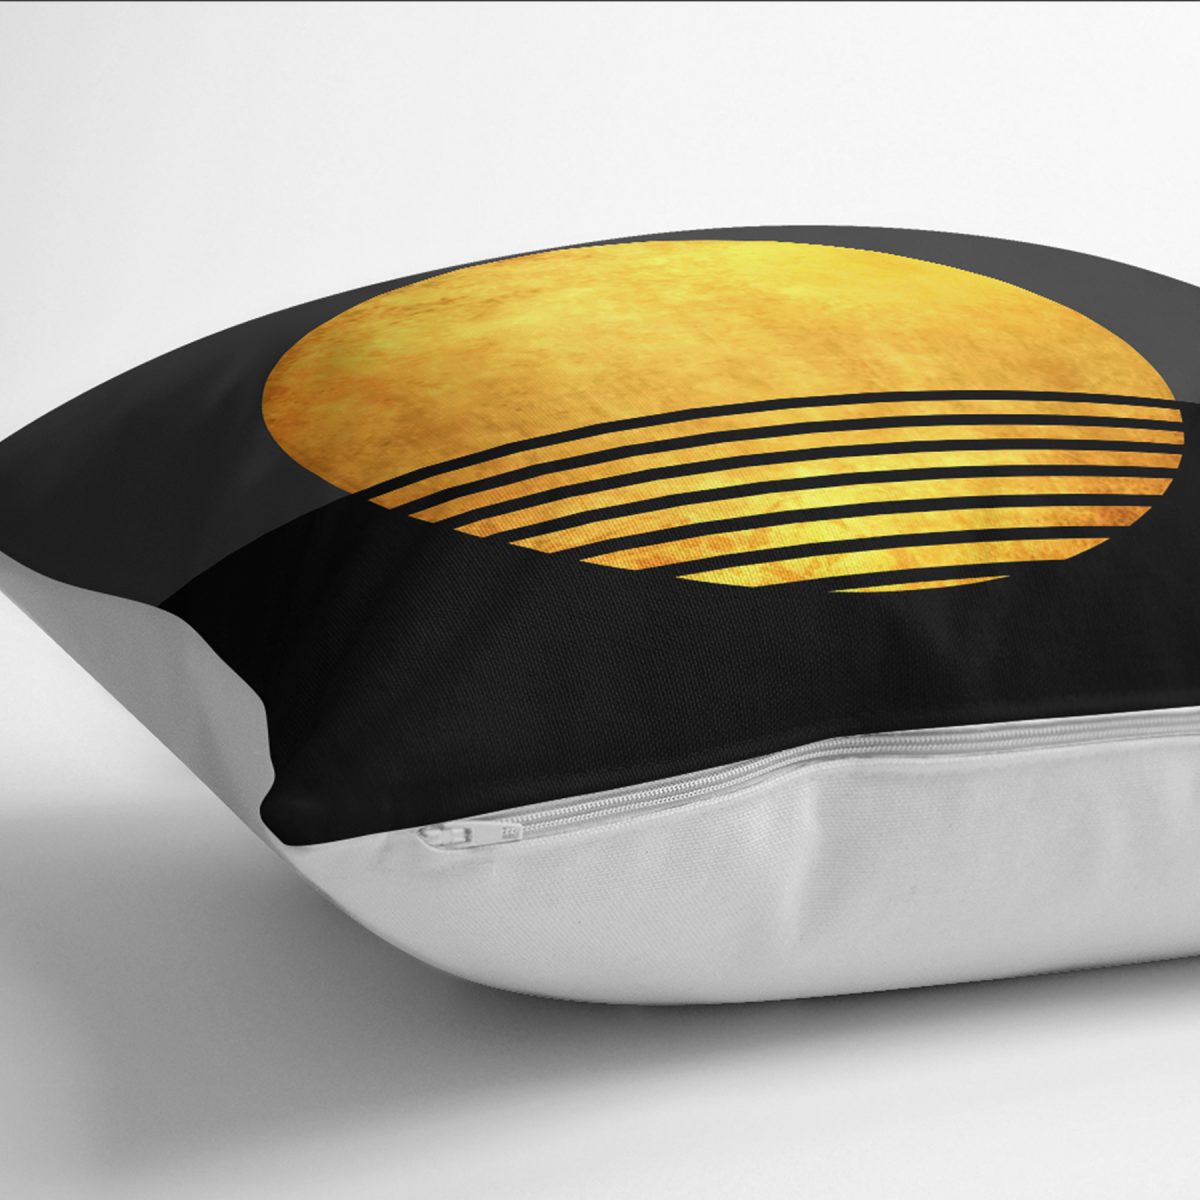 RealHomes Gold - Siyah Zeminde Kanvas Motifli Güneş Desenli Dijital Baskılı Yastık Kırlent Kılıfı Realhomes